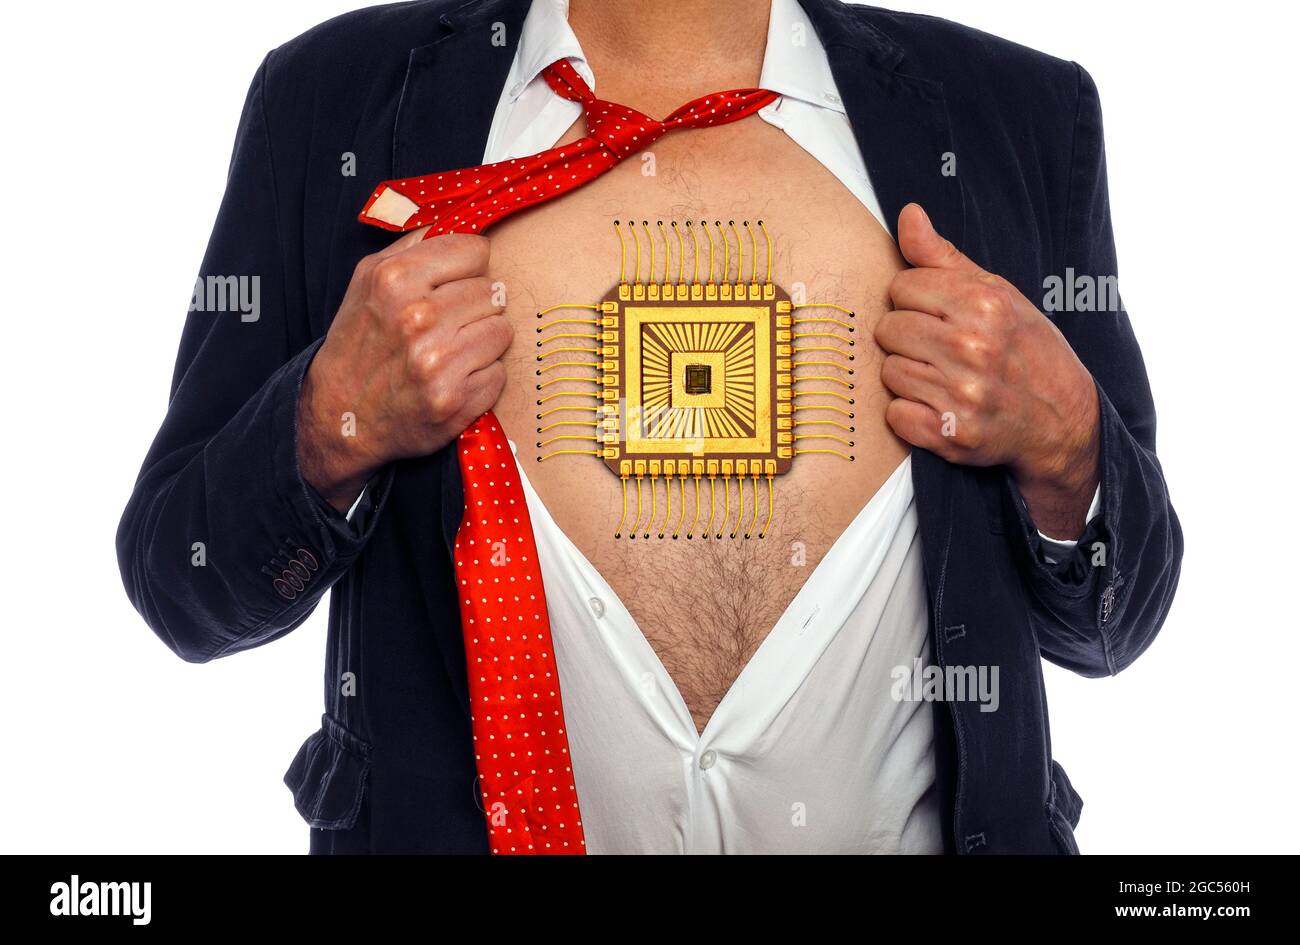 Uomo con un chip sul petto, immagine concettuale composita Foto Stock